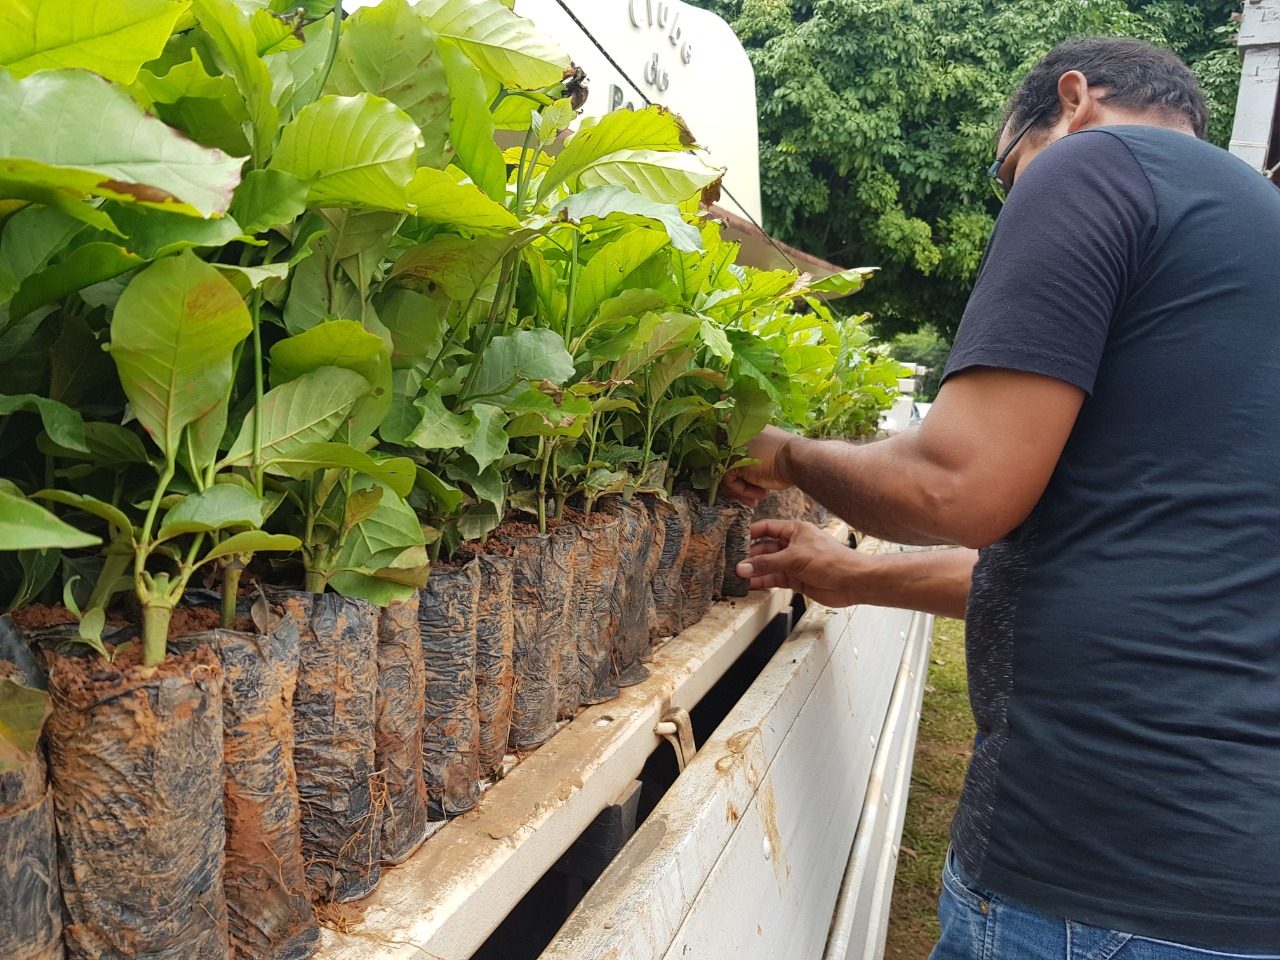 G1 - Máquina reduz custo da colheita do café conilon e robusta em Rondônia  - notícias em 4 Rondonia Rural Show 2015